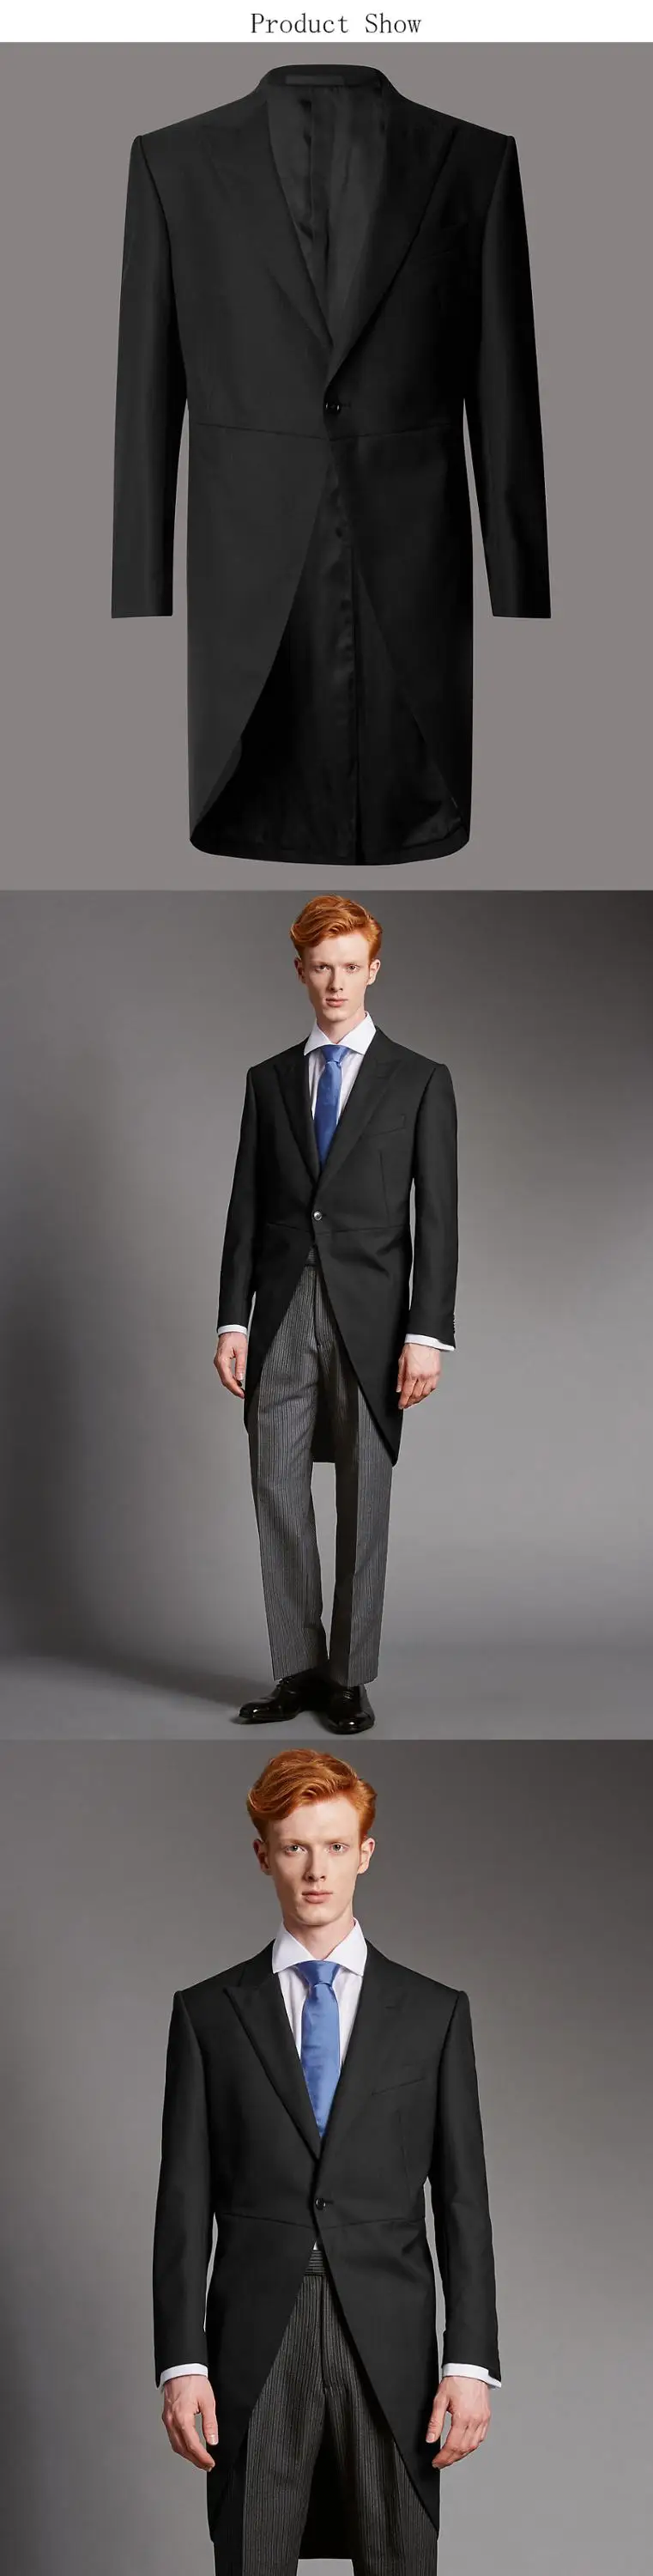 Top Exquisite Manner Hochzeit Schwarz Kleid Mantel Tails Anzug Buy Kleid Mantel Tails Manner Anzug Manner Hochzeit Anzuge Product On Alibaba Com